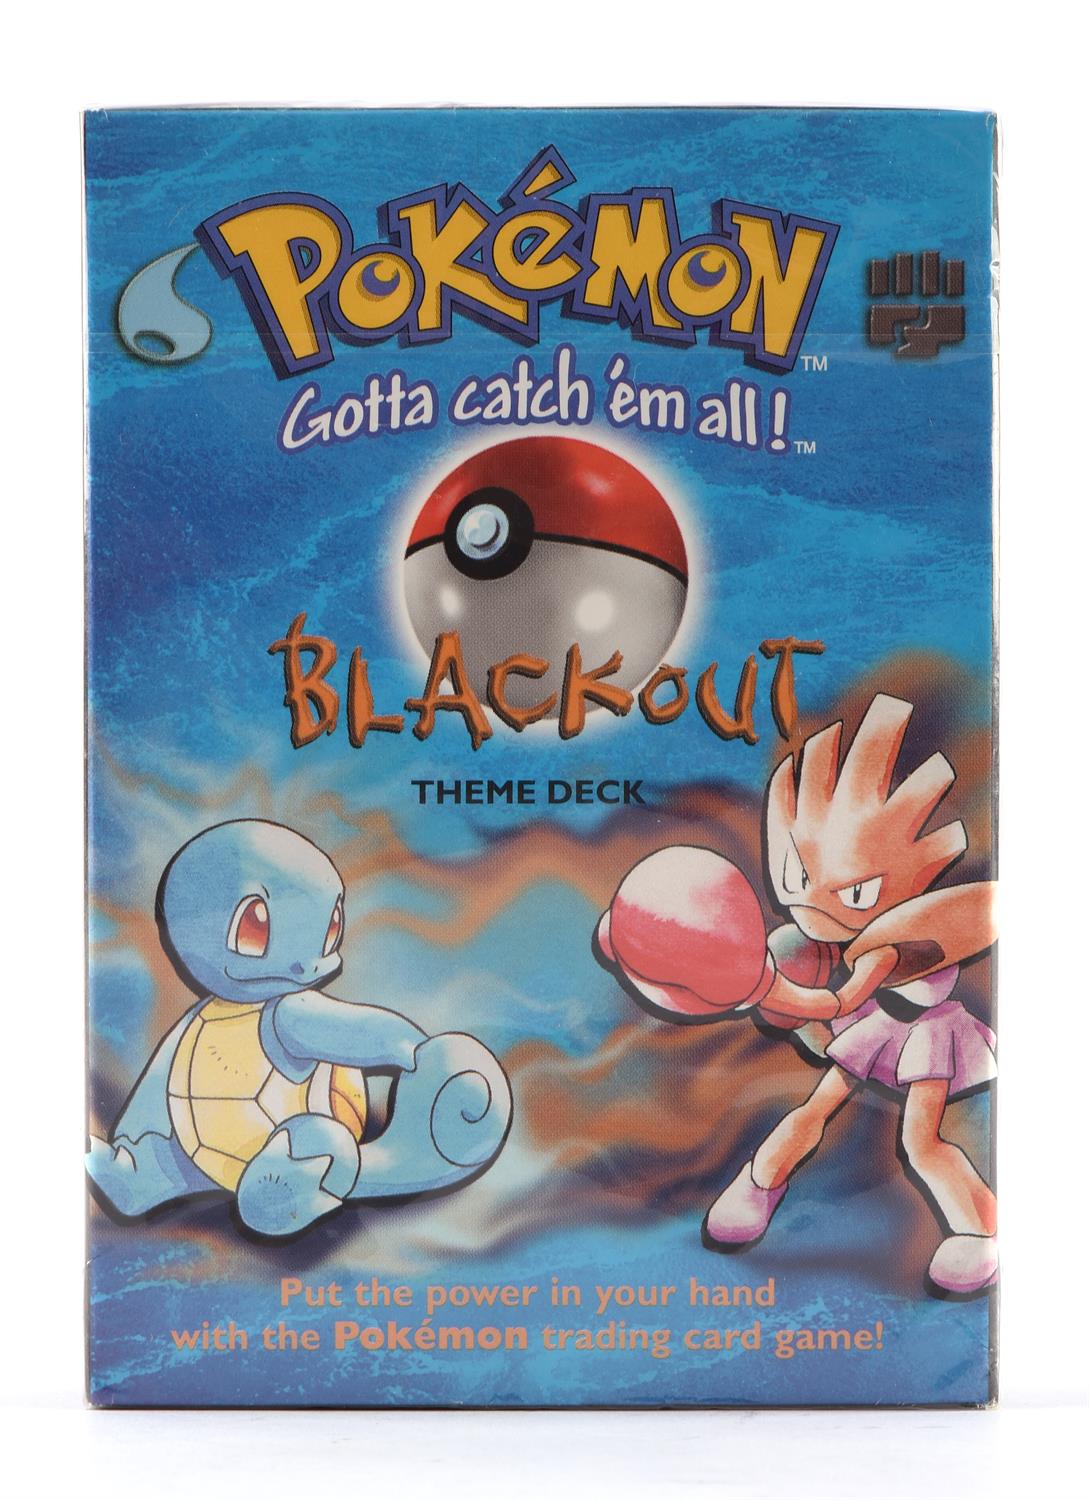 Pokemon TCG. Pokemon Blackout Sealed Theme Deck. This lot contains a sealed Blackout theme deck - Image 2 of 6